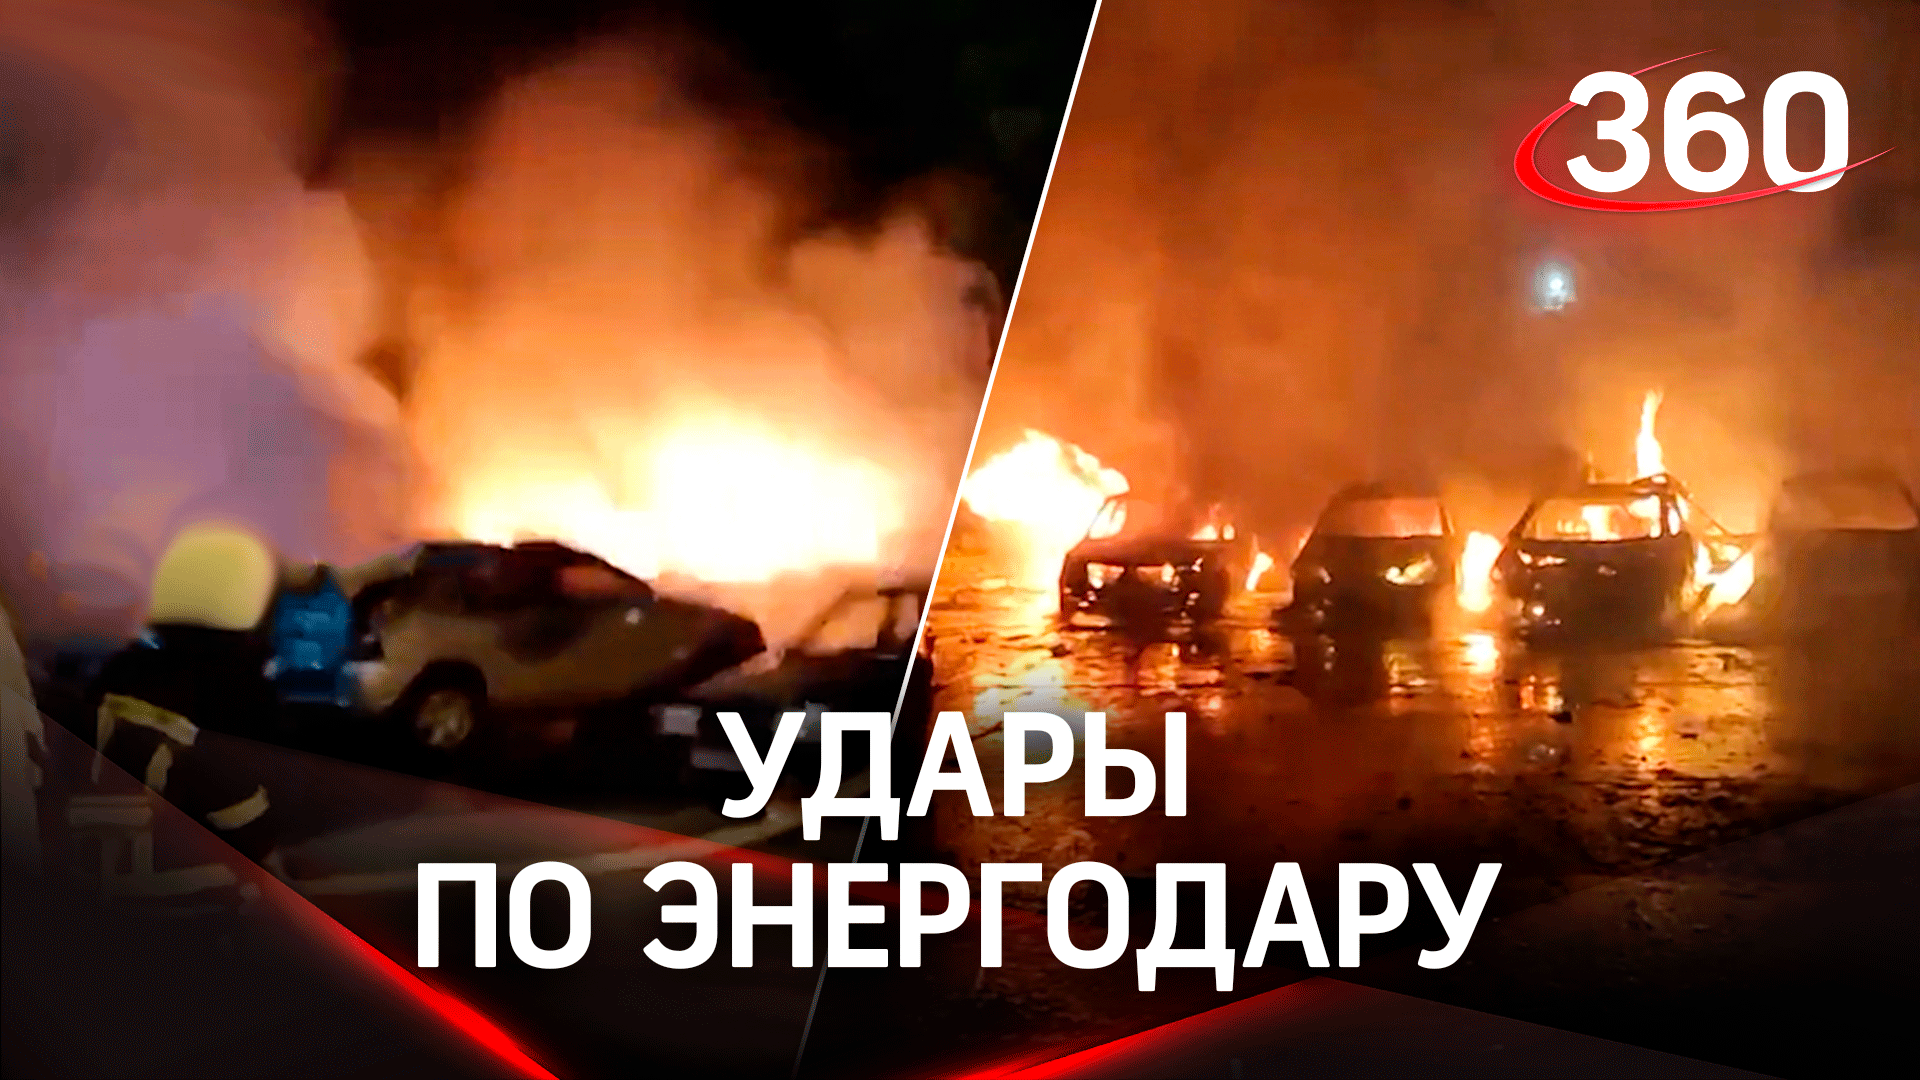 ВСУ ударили по Энергодару - девять пострадавших, разрушены квартиры, сгорели машины. Видео